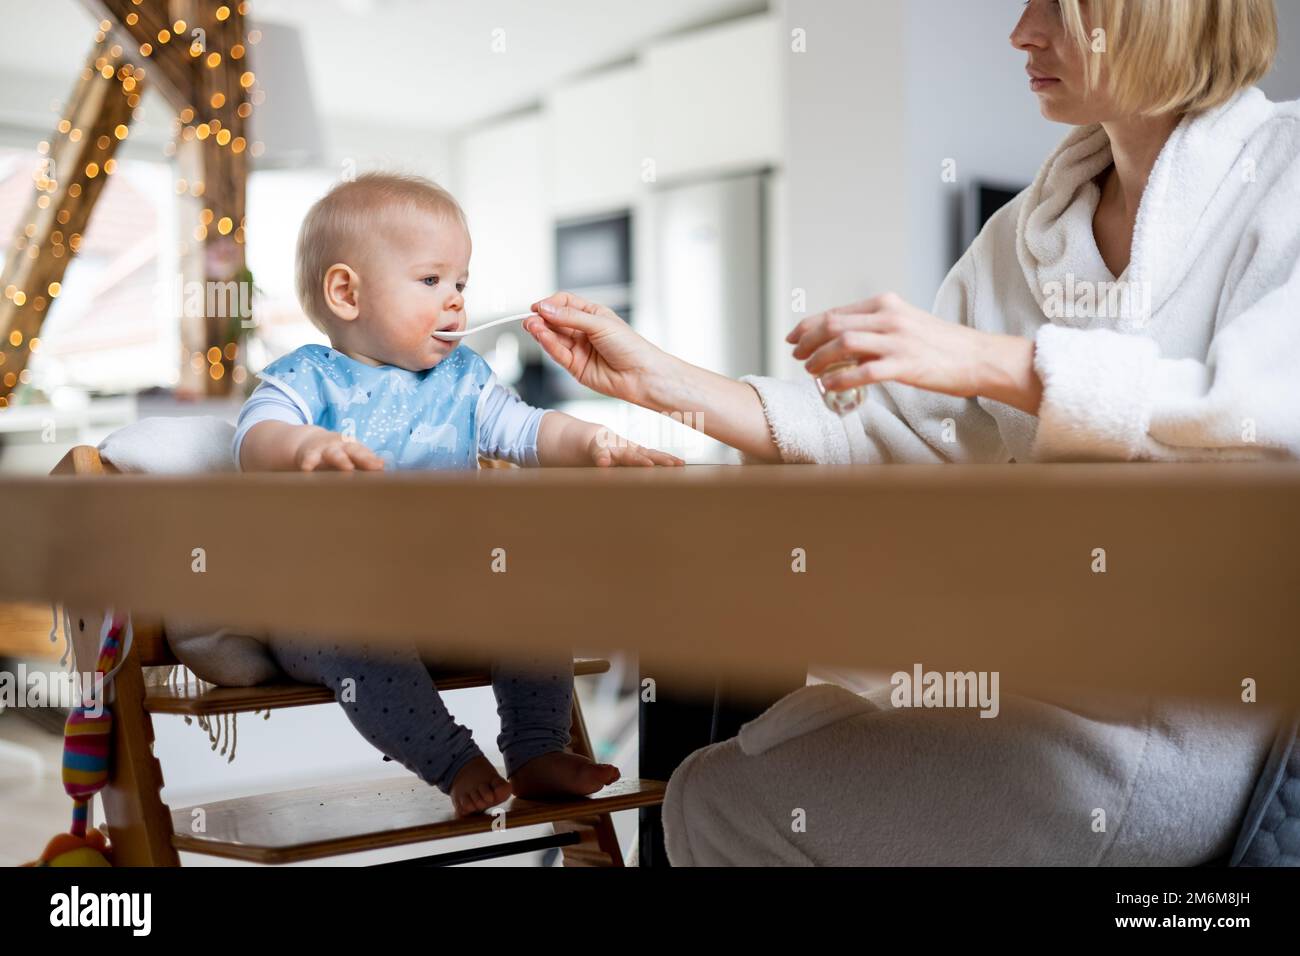 Mutter trägt einen gemütlichen Bademantel Löffel und füttert ihr Kind im Baby-Hochstuhl mit Fruchtpüree am Esstisch zu Hause. Einführschleuse für feste Babynahrung Stockfoto